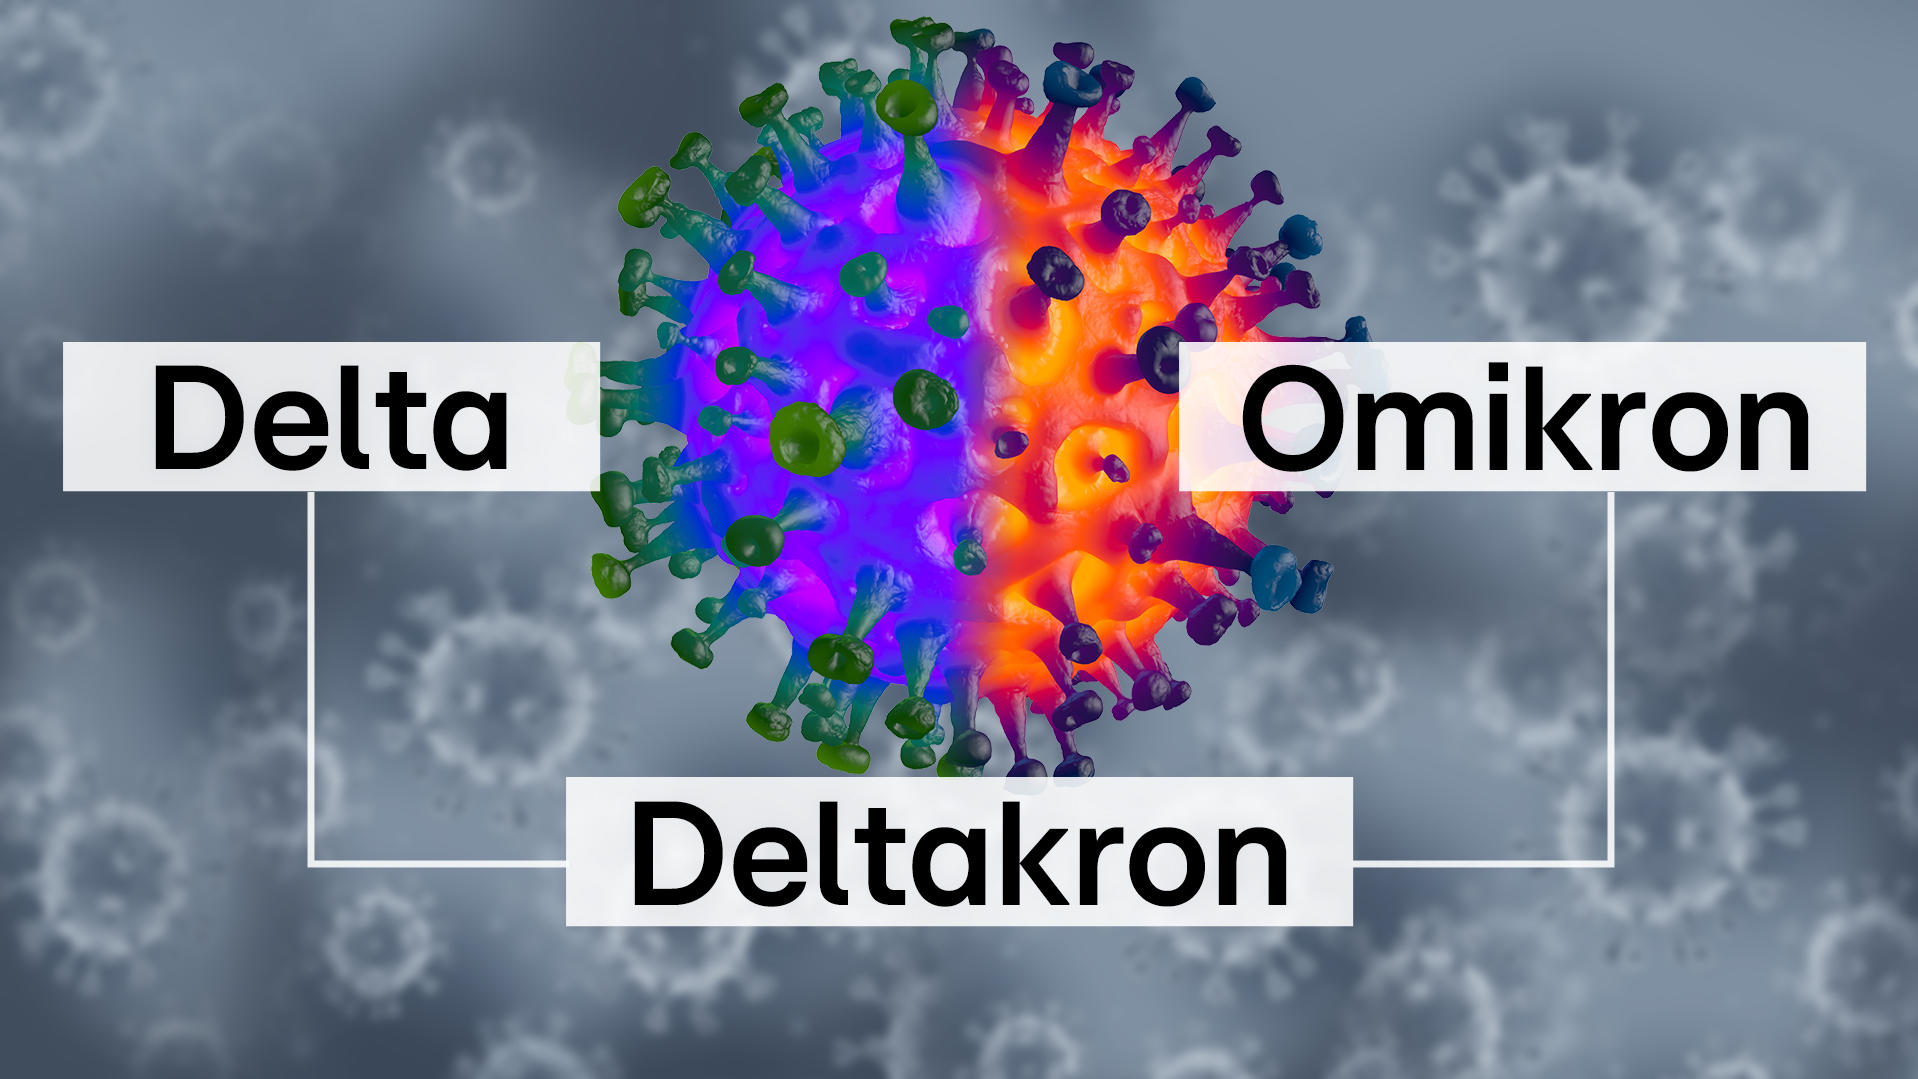 Delta und Omikron verbünden sich zu "Deltakron"